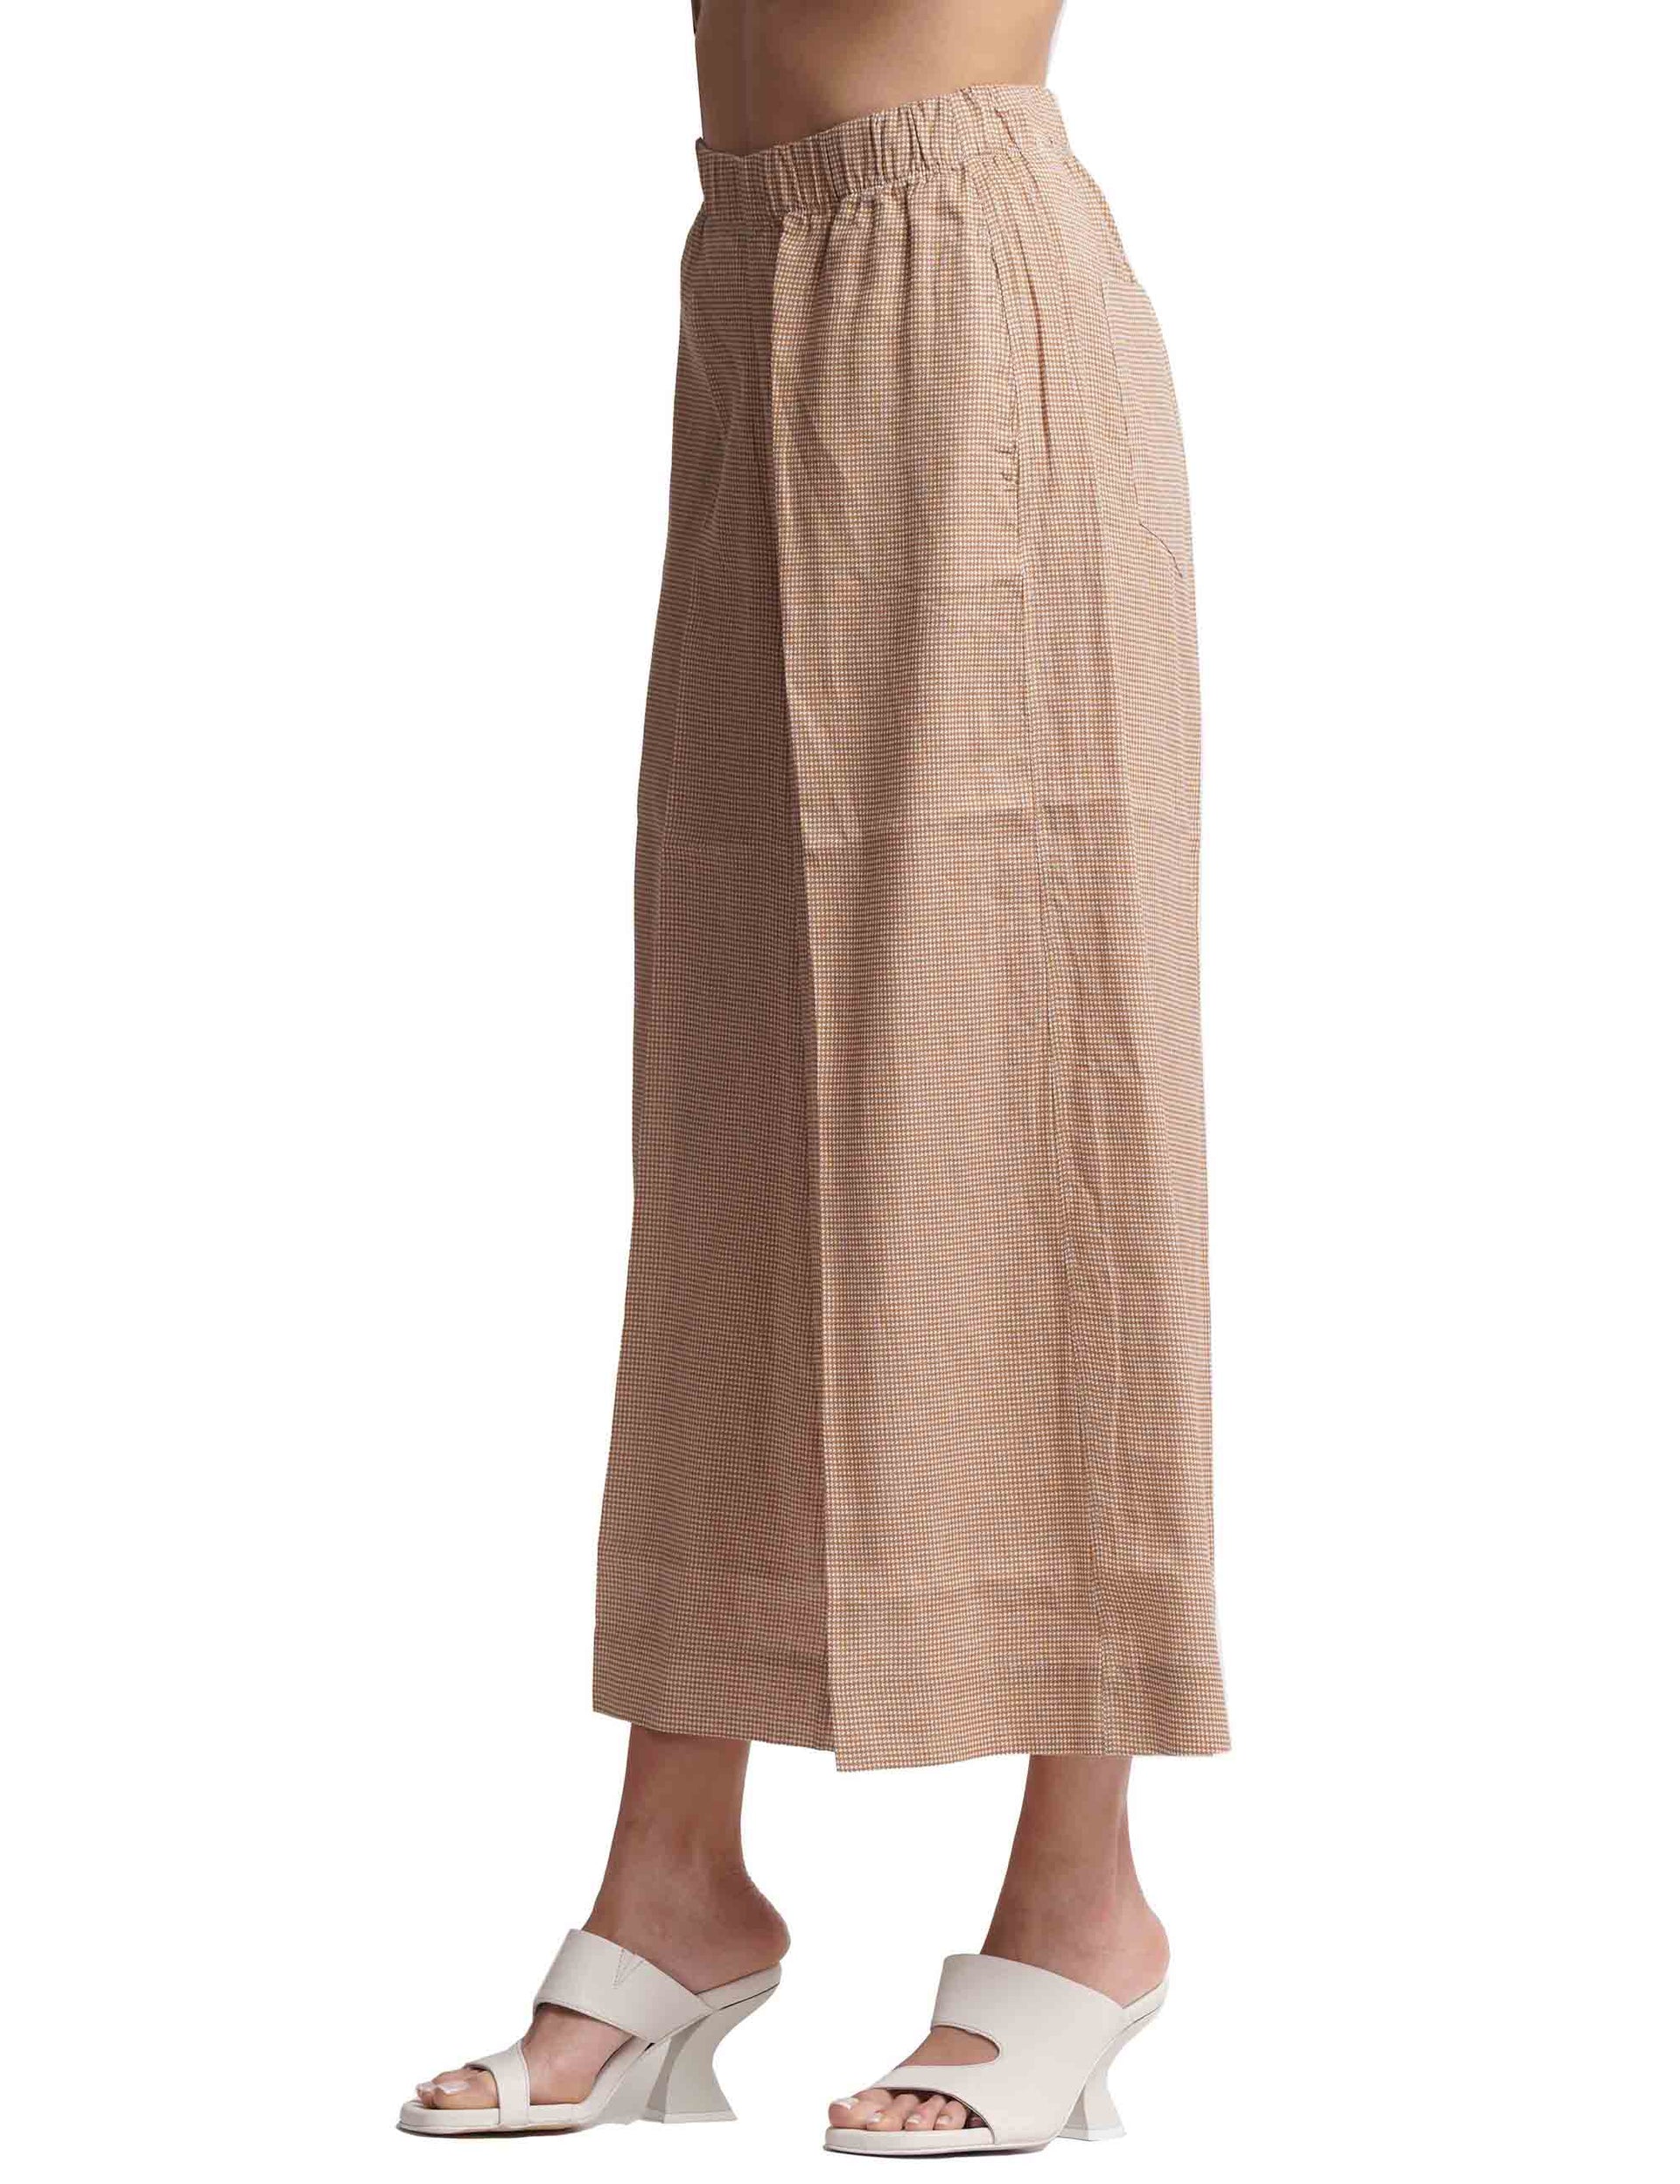 Pantaloni donna in puro lino cammello a gamba larga con elastico in vita